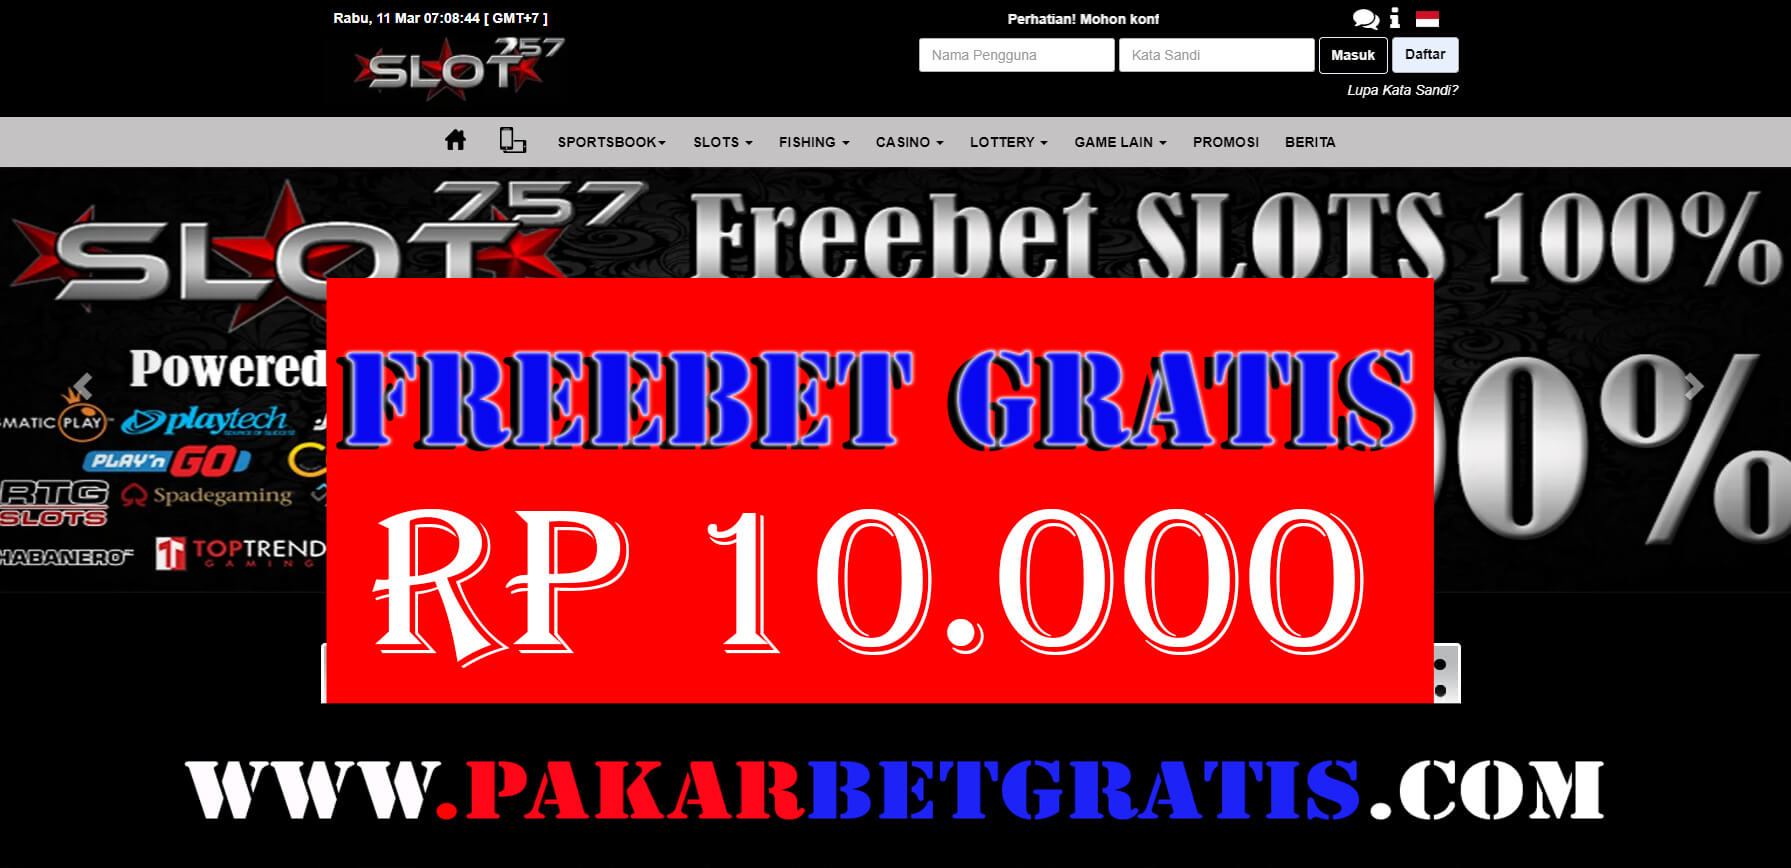 Freebet Gratis mpo757 Rp 10.000 Tanpa Deposit